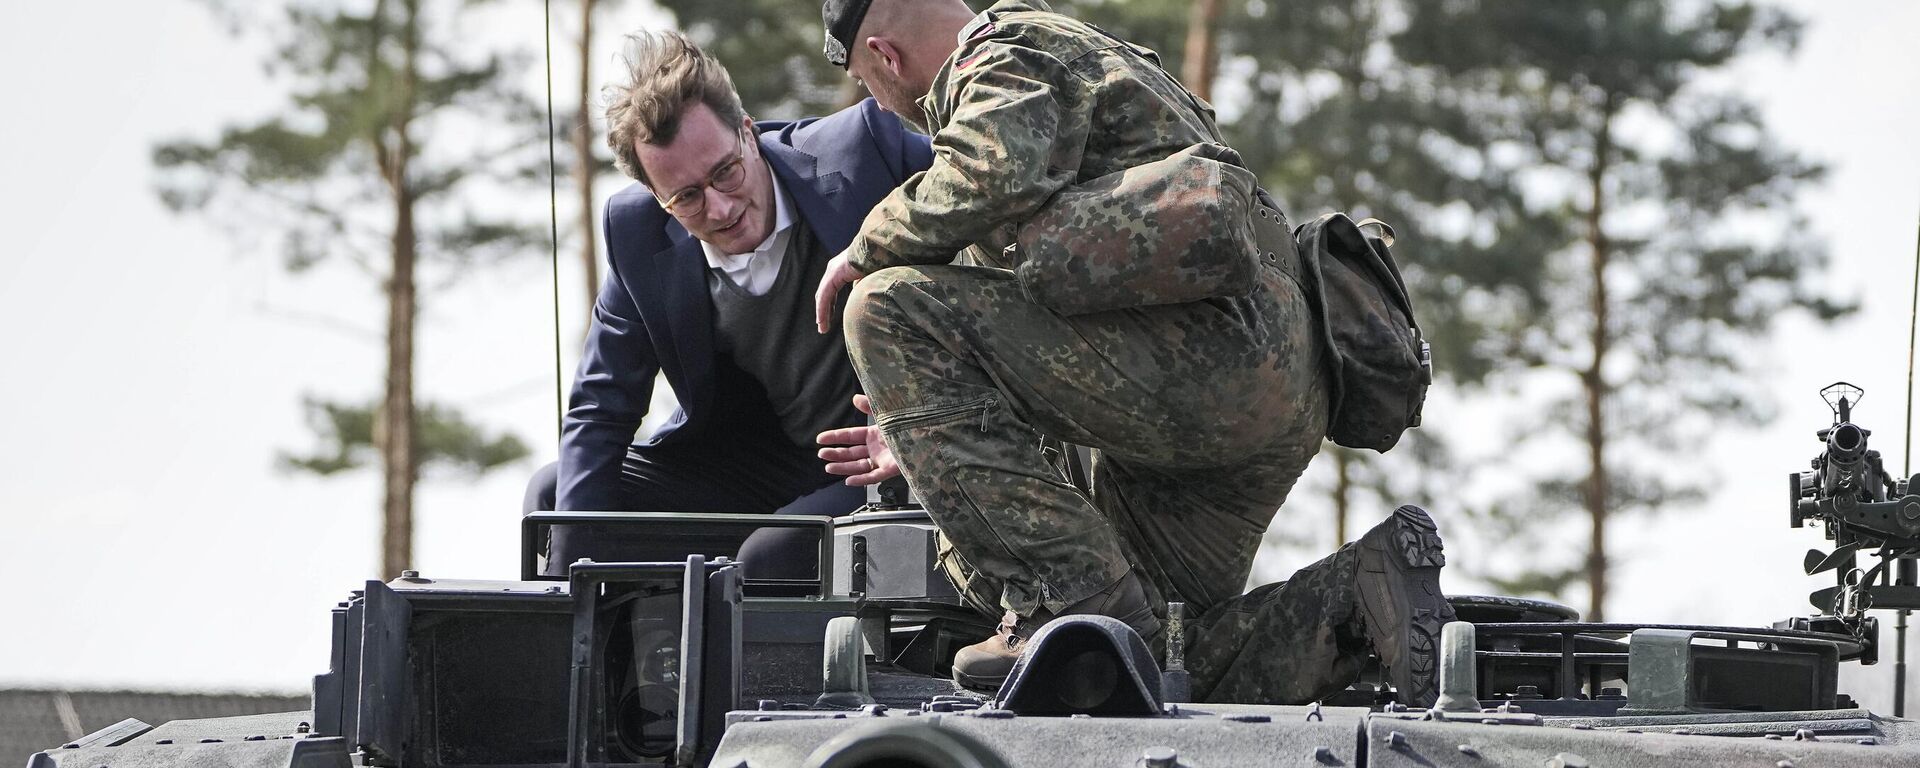 O governador Hendrick Wuest senta-se em um tanque Leopard durante uma visita à base militar Field Marshal Rommel Barracks em Augustdorf, Alemanha, 30 de março de 2022 - Sputnik Brasil, 1920, 07.02.2023